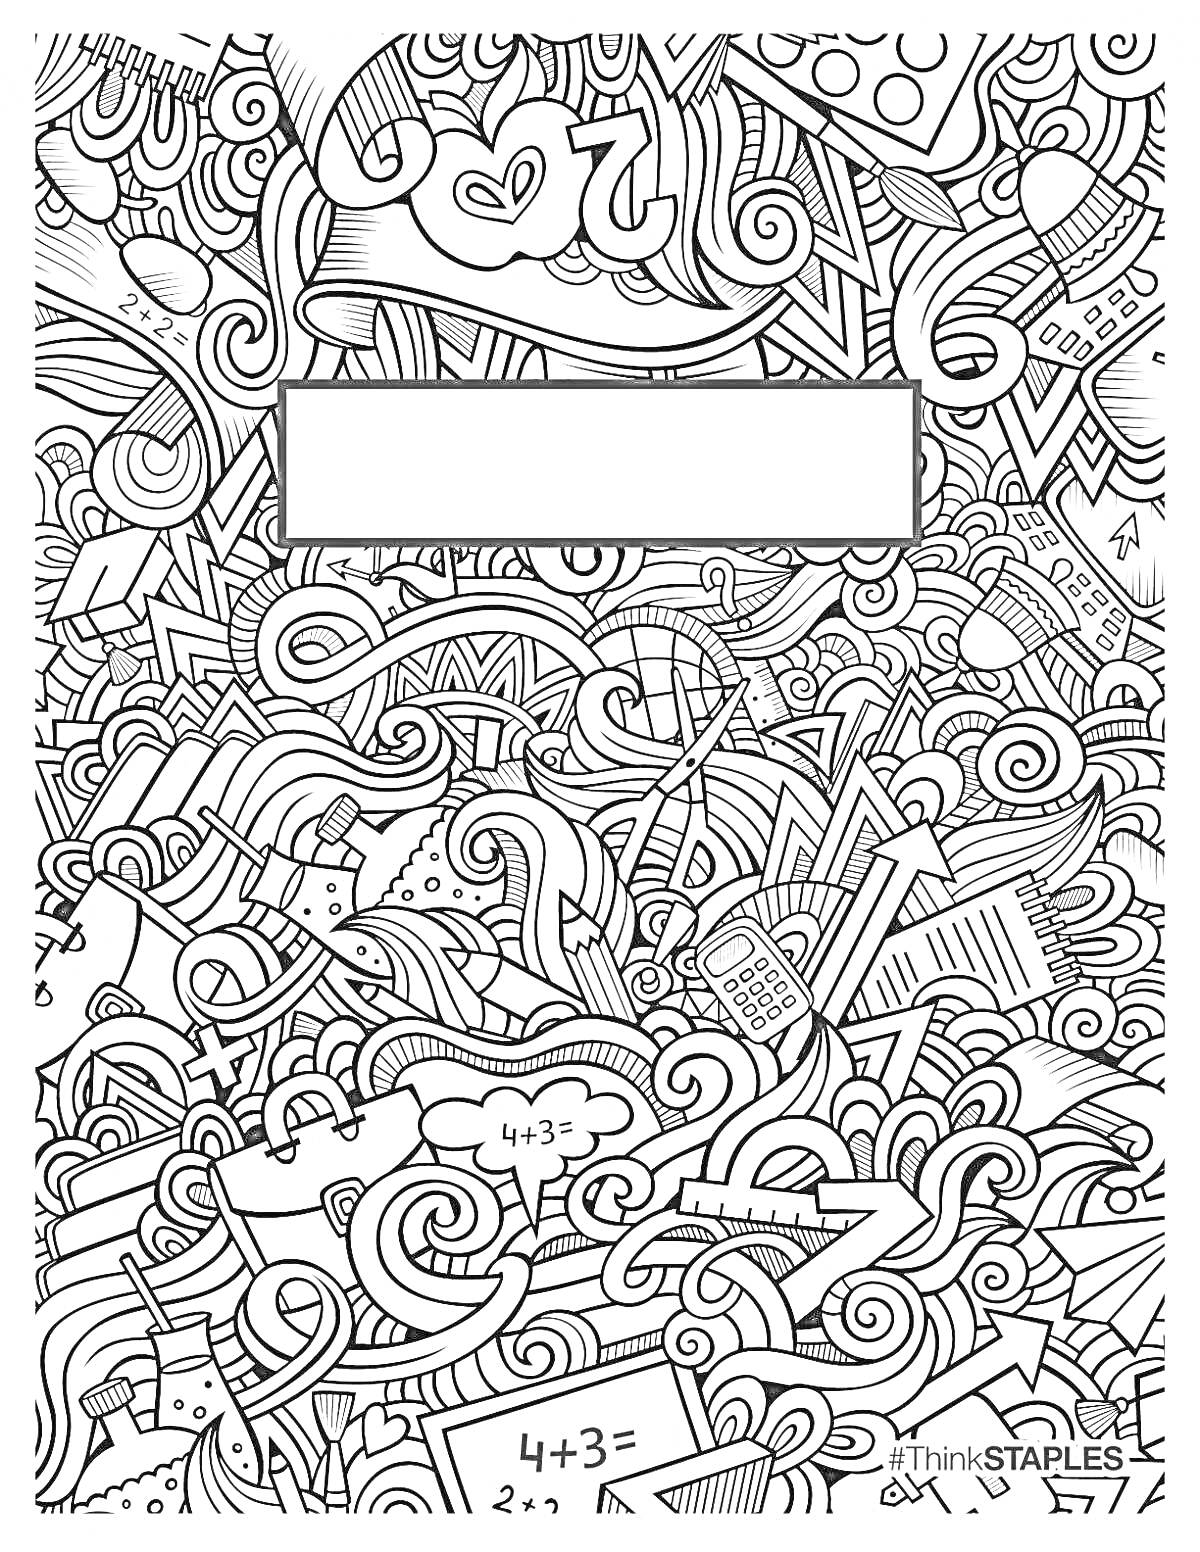 Раскраска Обложка для тетради в начальную школу с абстрактным узором, математическими примерами, линейкой, книгами, калькулятором, карандашами, облаками и сердцами